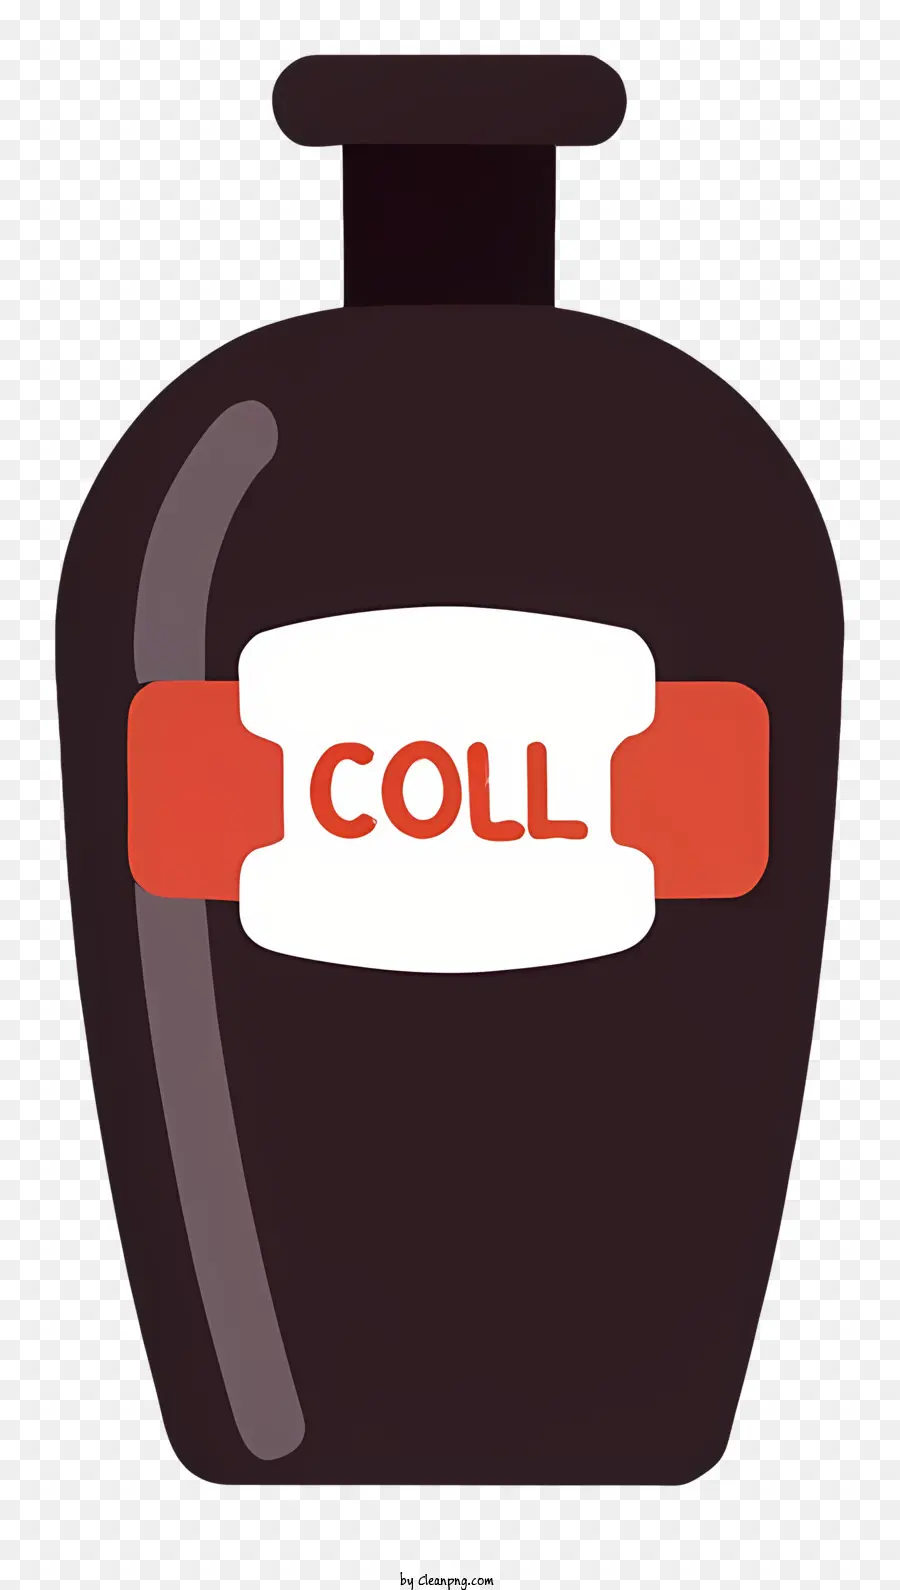 Proteina integrale di collagene per la bottiglia di tessuto connettivo della bottiglia di collagene per pelle e articolazioni - Immagine di bottiglia di collagene, lettere rosse, vetro, integratore